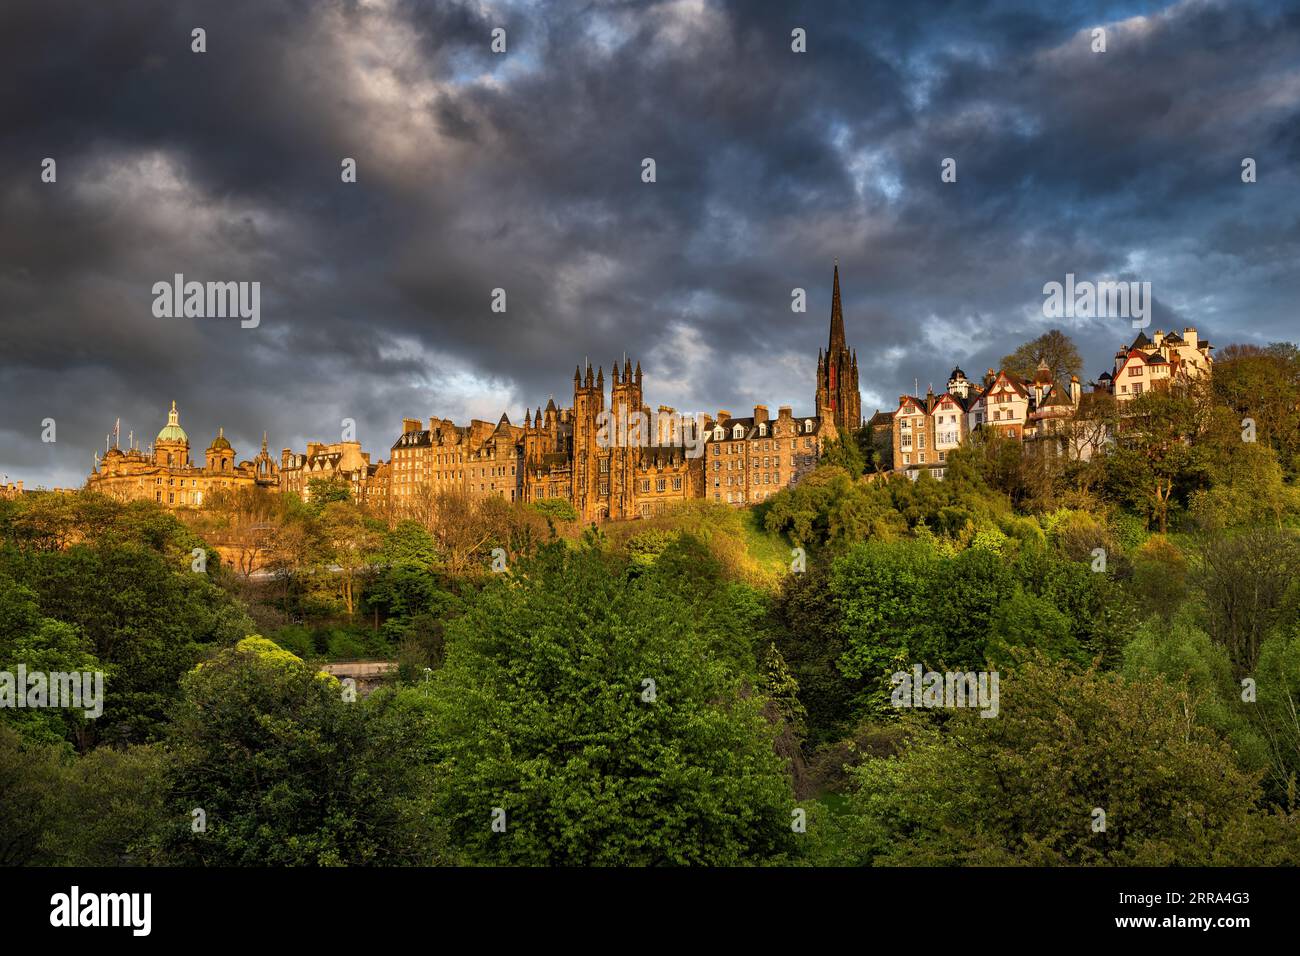 Stadt Edinburgh bei Sonnenuntergang in Schottland, Großbritannien. Skyline der Altstadt im Sonnenlicht mit aufziehenden Sturmwolken über dem historischen Zentrum der schottischen Hauptstadt. V Stockfoto